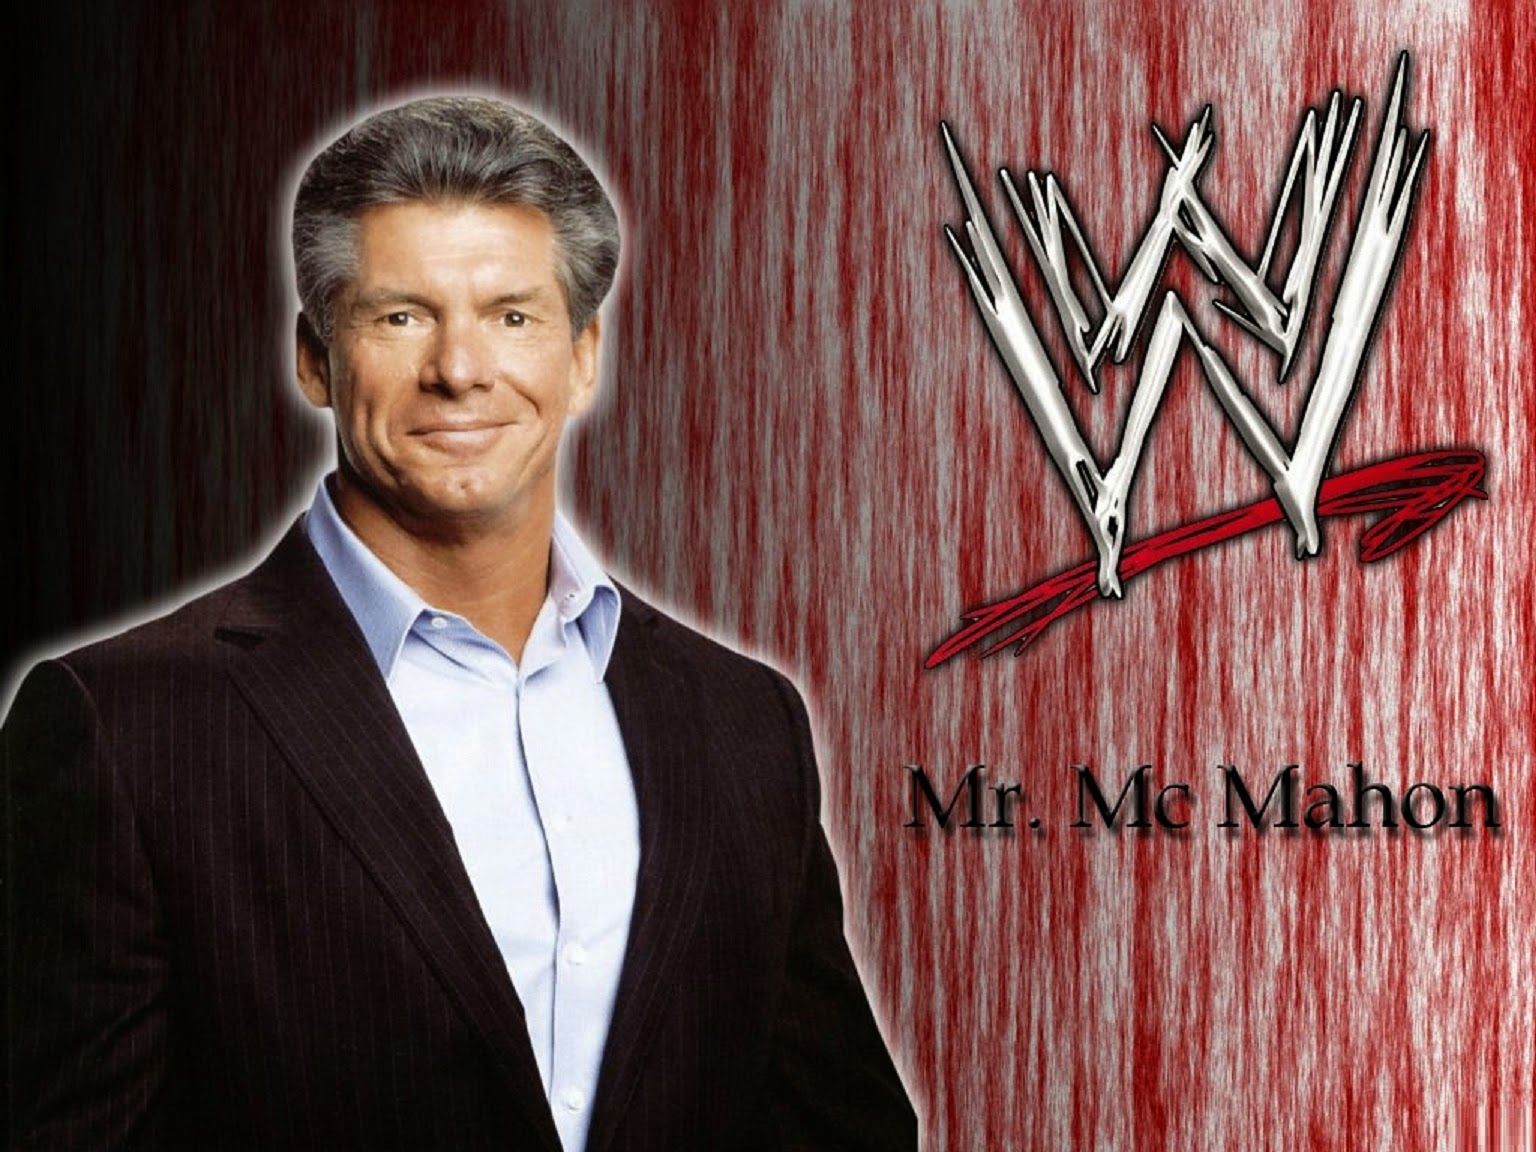 Vince McMahon Wallpaper. Vince Lombardi